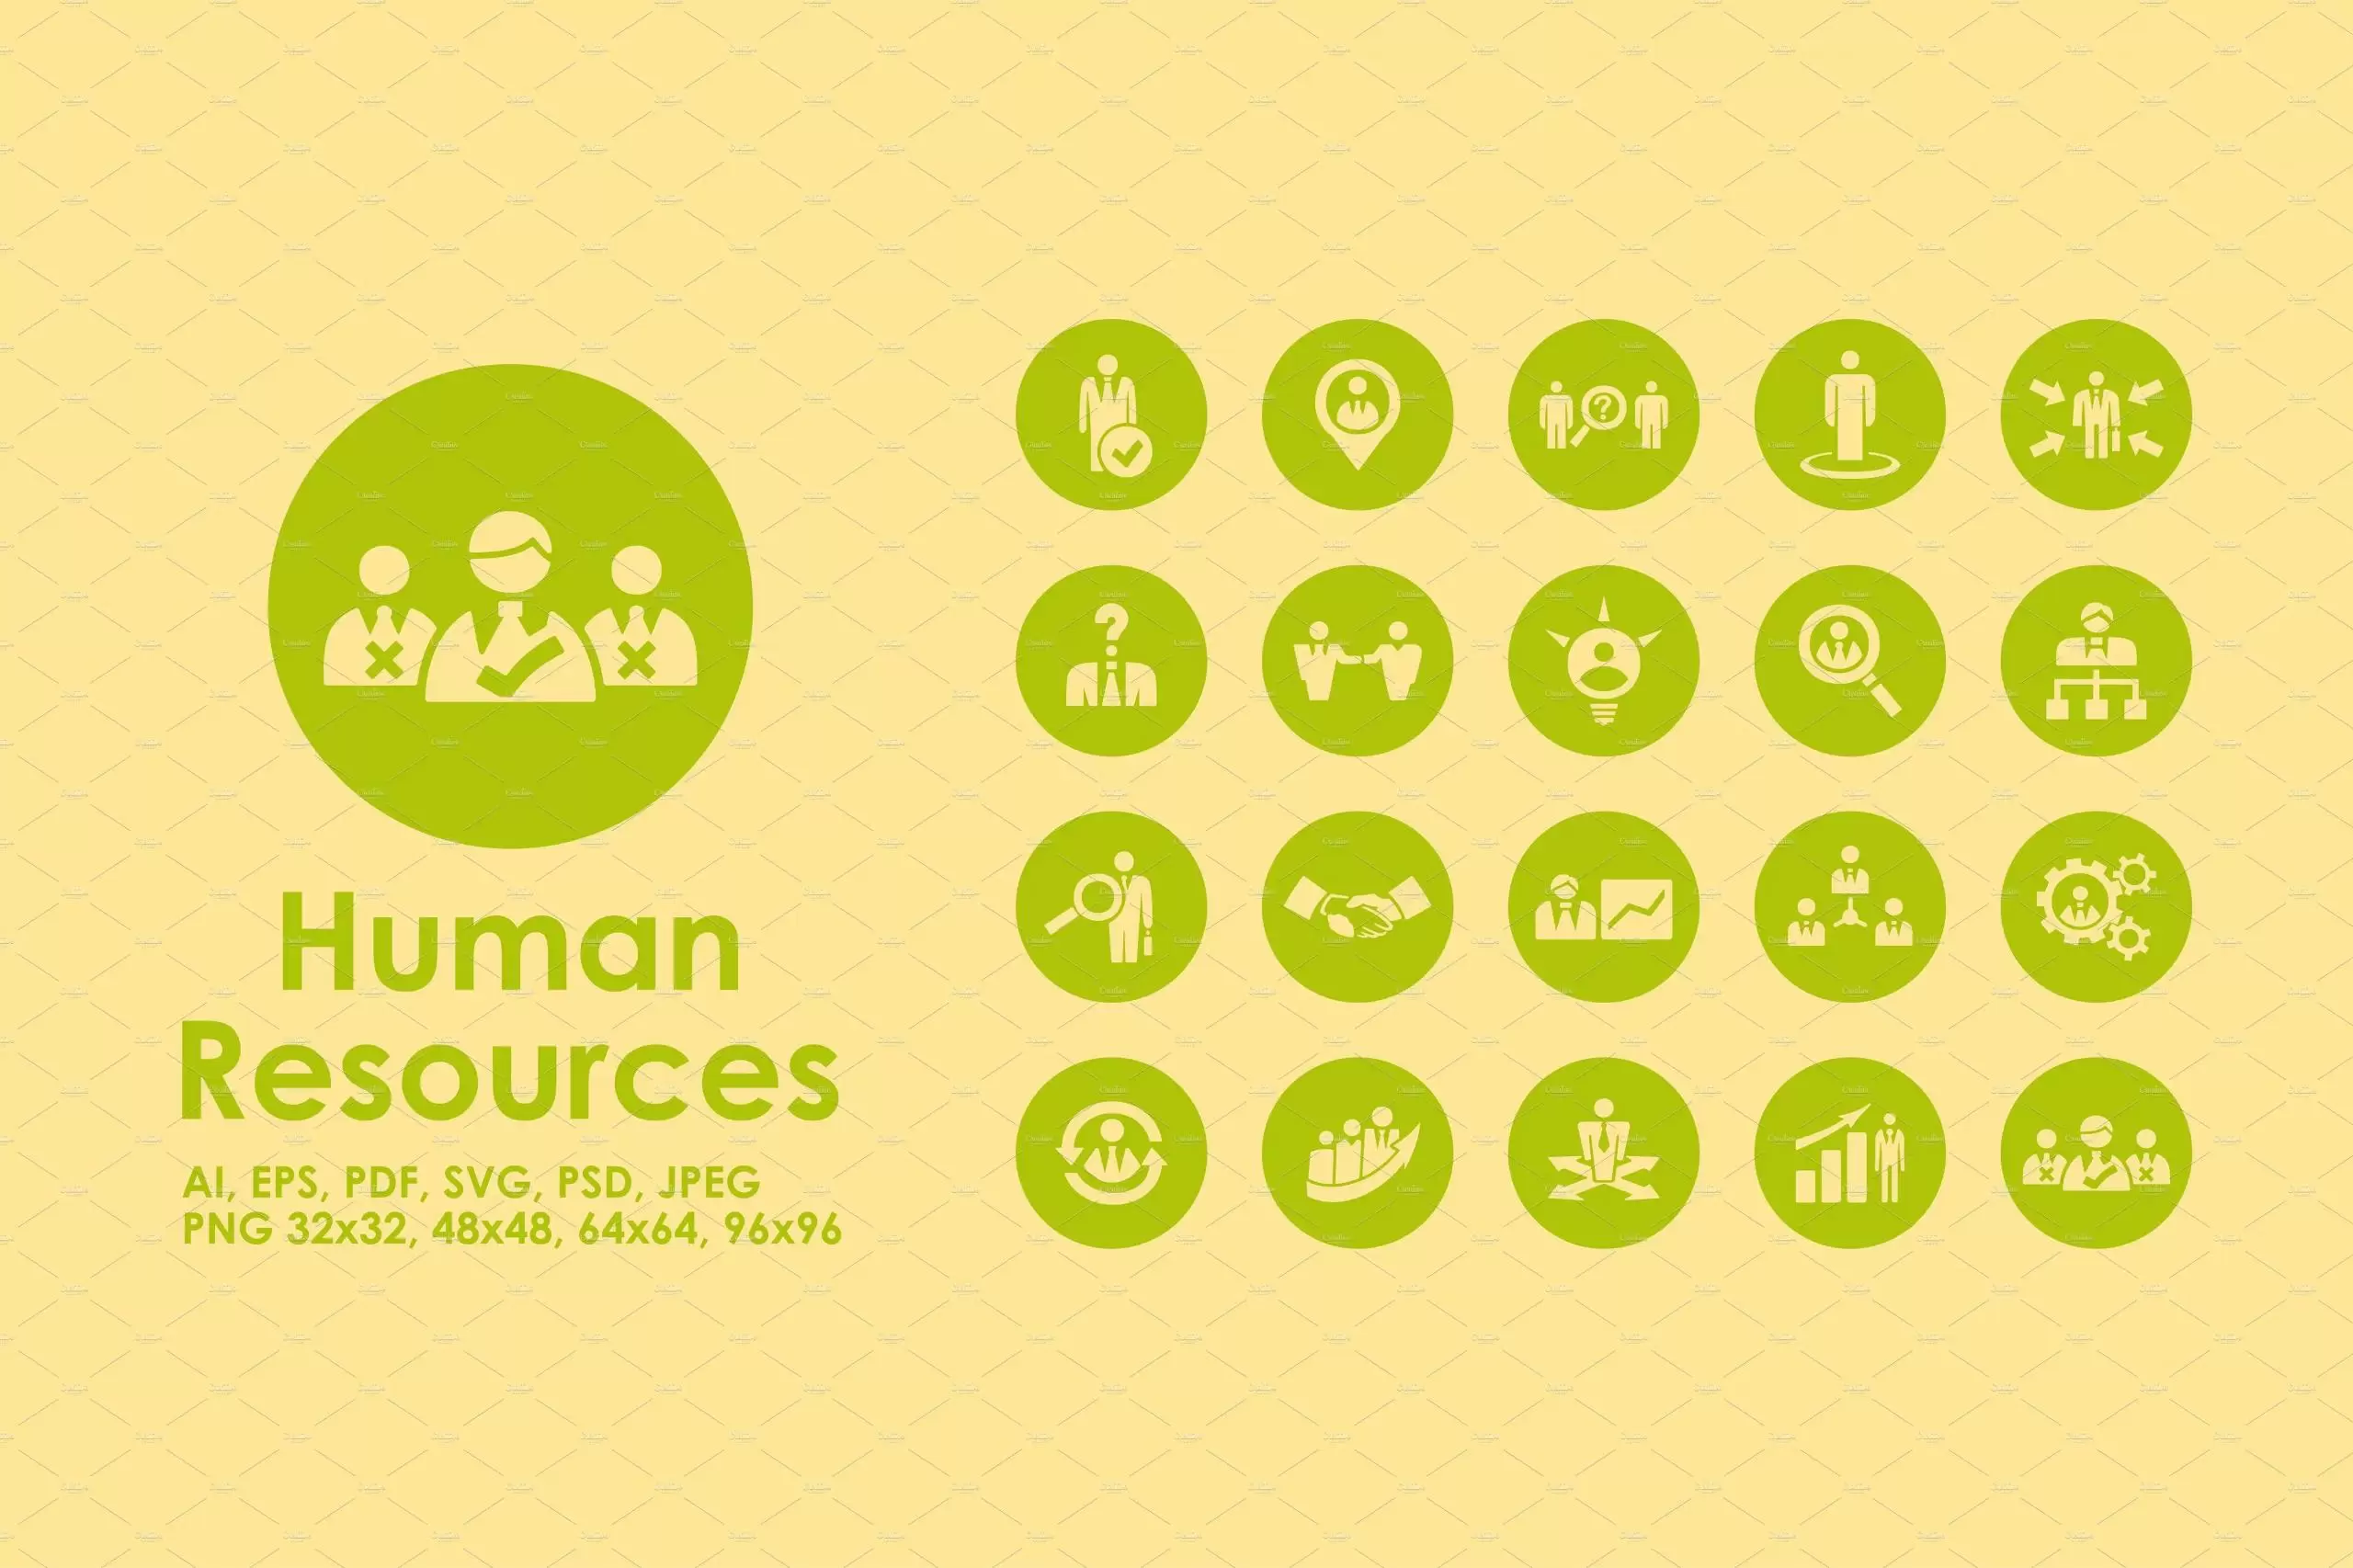 人力资源图标素材 Human Resources icons插图